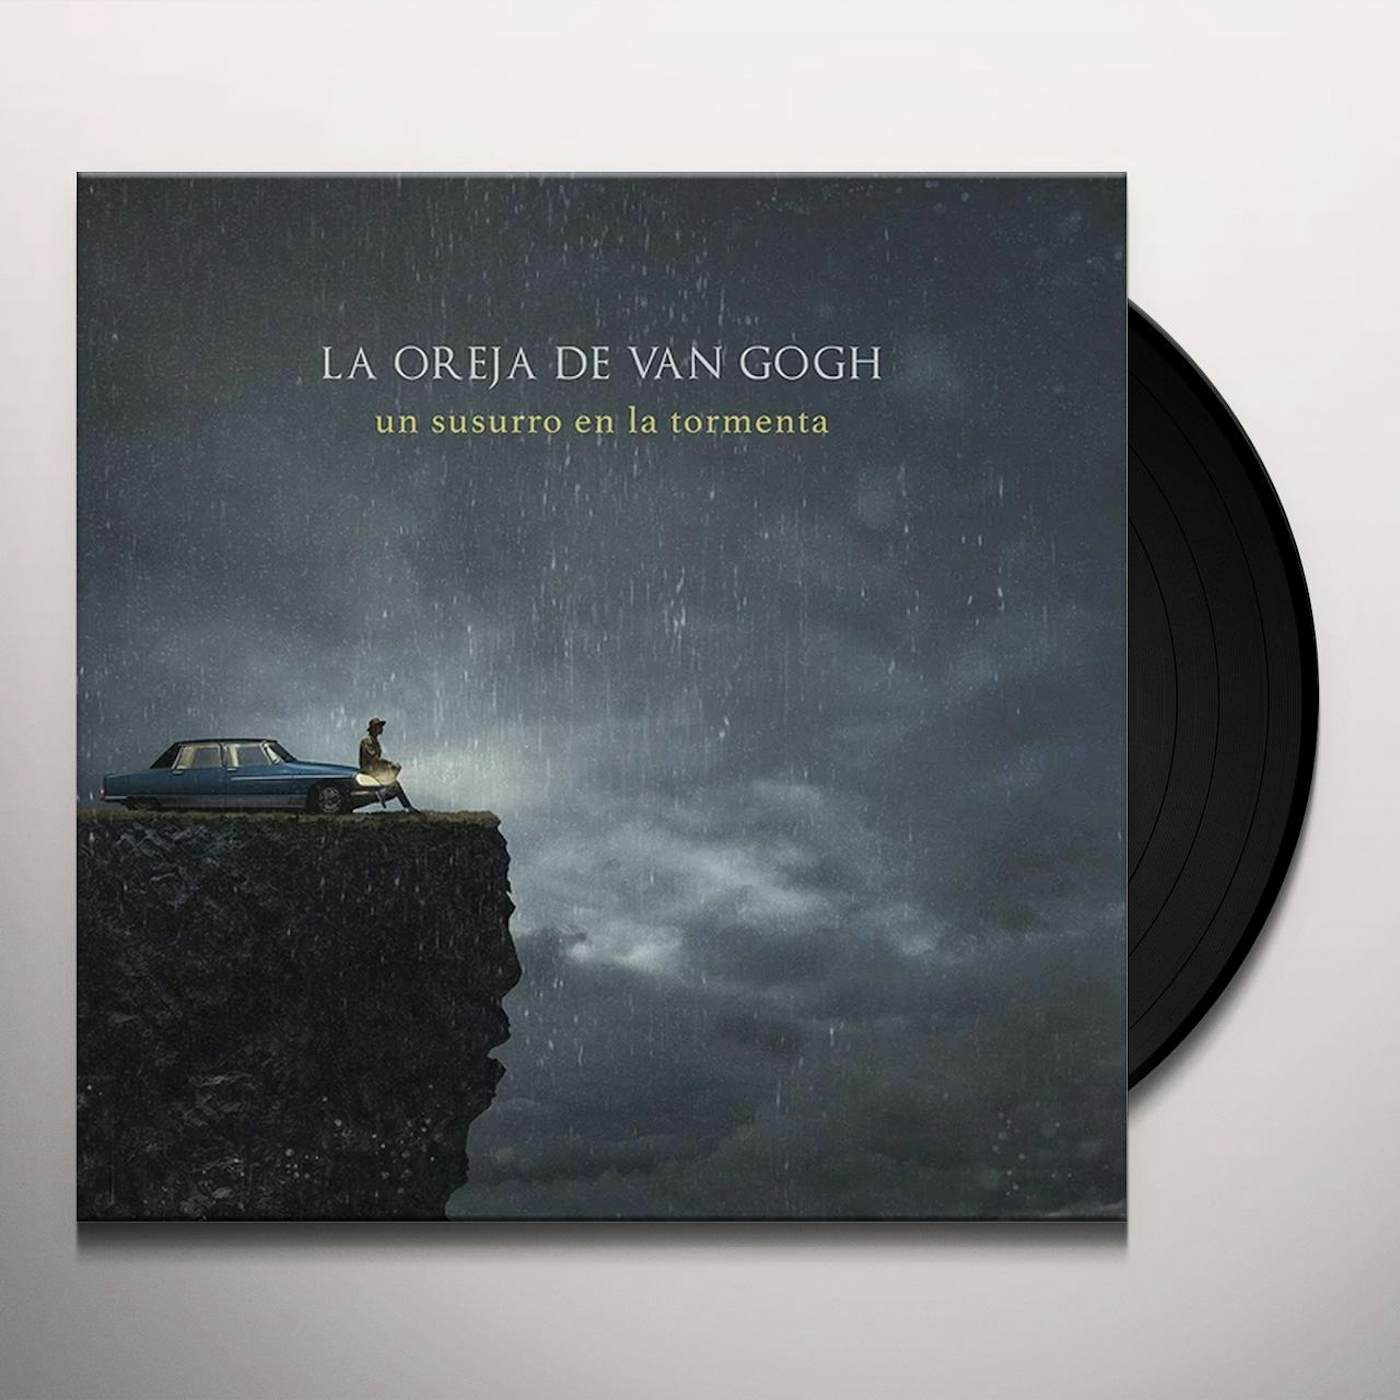 Petición · Reeditar la discografía de La oreja de Van Gogh en vinilo ·